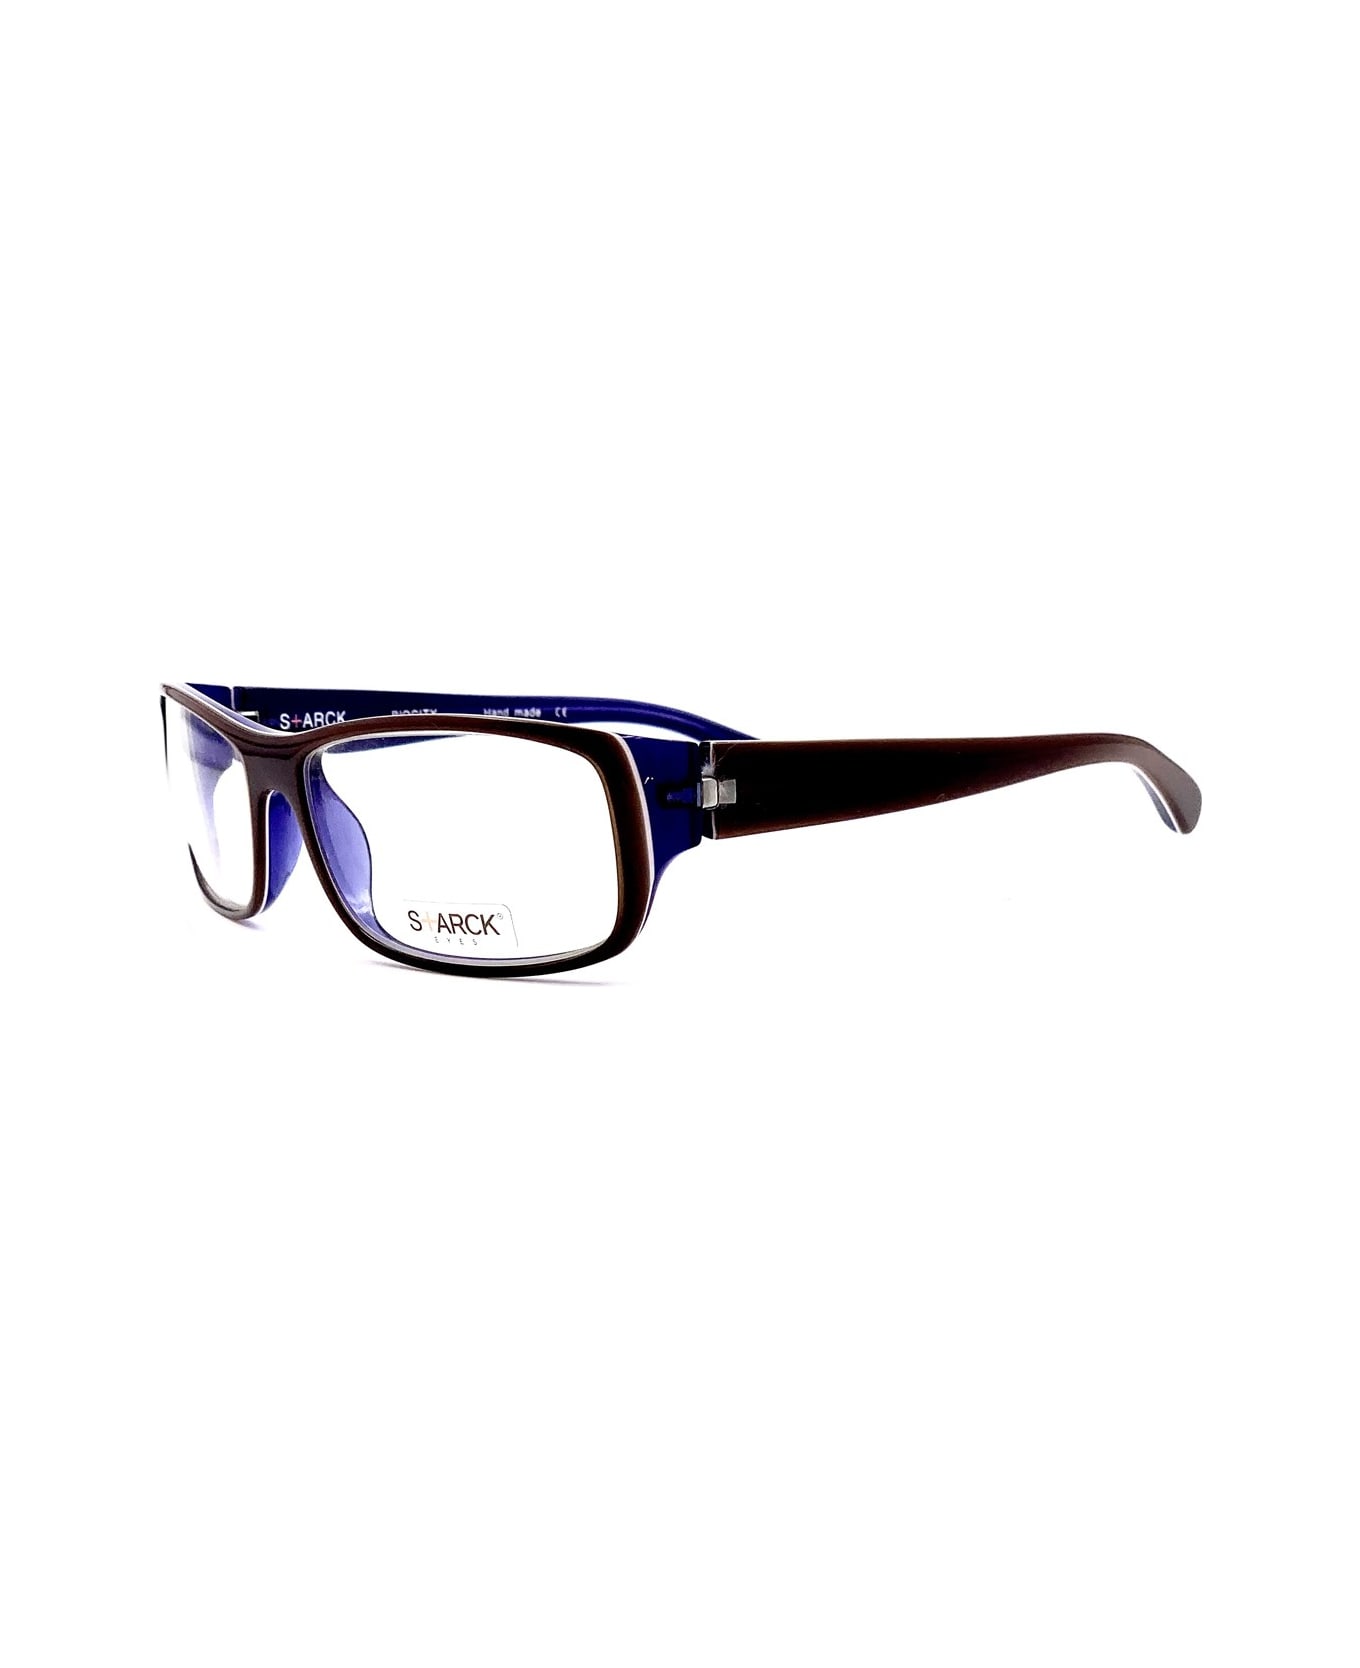 Philippe Starck P0605 Glasses - Nero アイウェア